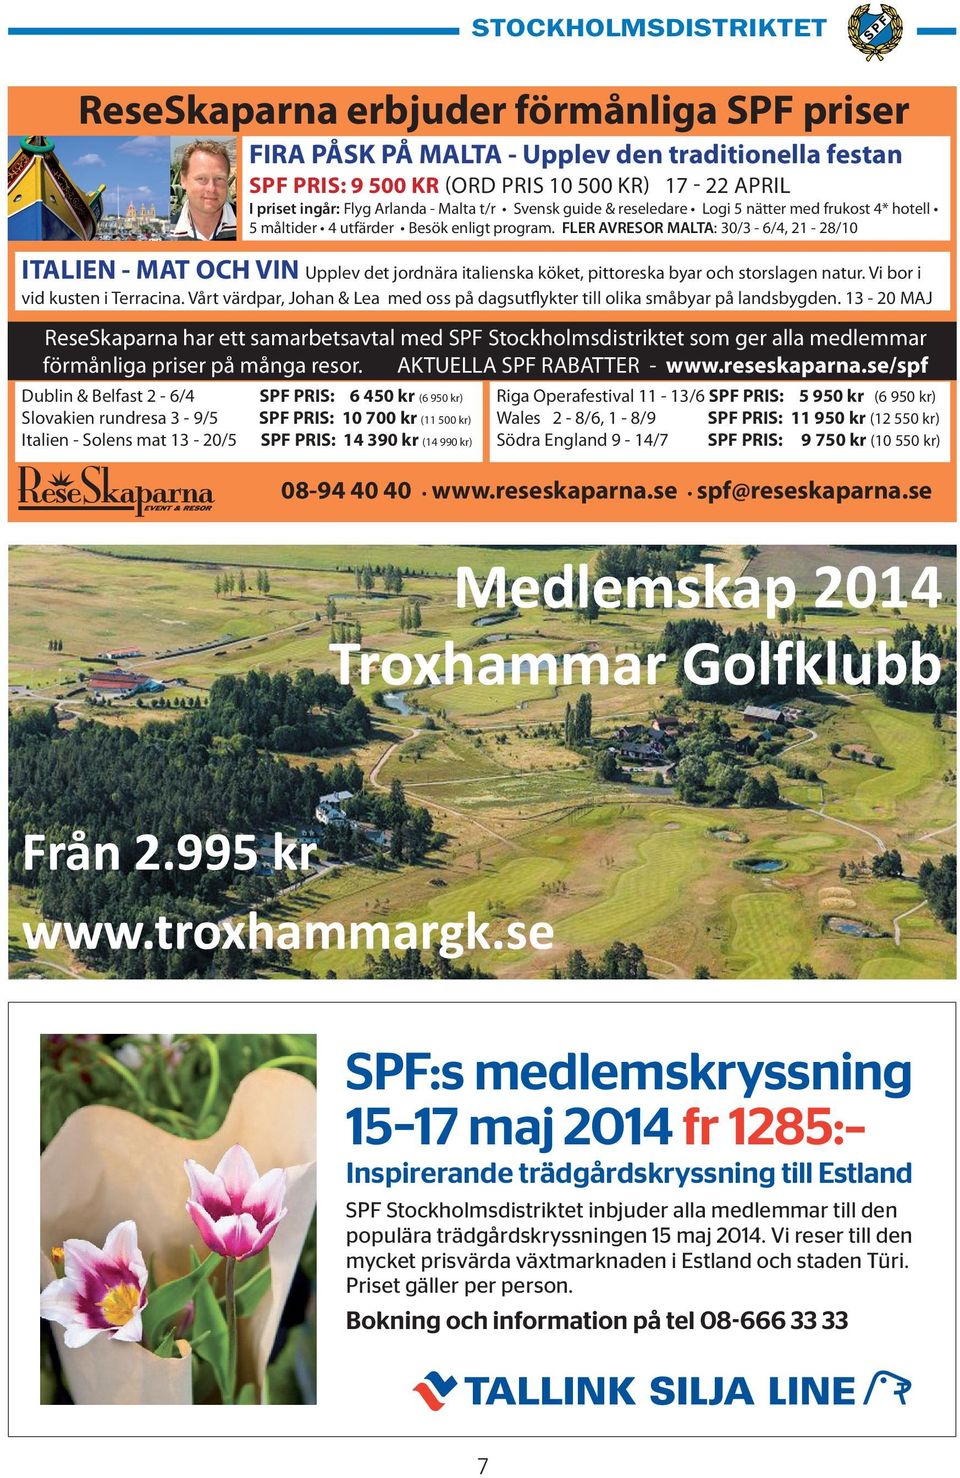 se Medlemskap 2014 Troxhammar Golfklubb annons distrikstbladet ReseSkaparna.indd 1 2013-12-05 09:37:39 Från 2.995 kr www.troxhammargk.